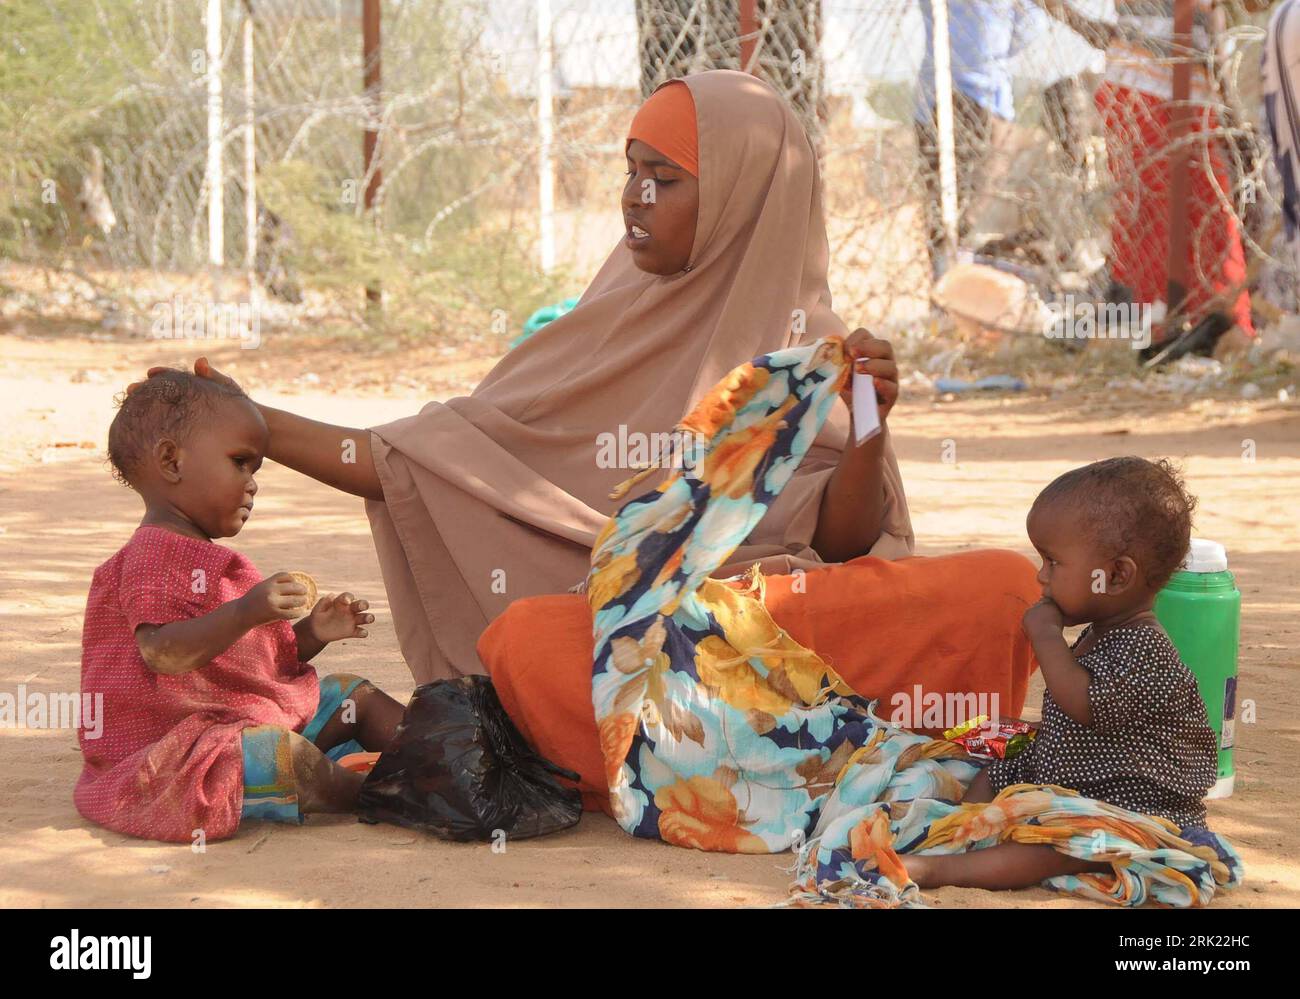 Bildnummer: 53038149  Datum: 28.05.2009  Copyright: imago/Xinhua Somalische Mutter mit ihren Kindern in einem Flüchtlingslager in Dadaab - Kenia - PUBLICATIONxNOTxINxCHN, Personen; 2009, Dadaab, Kenia, Flüchtling, Flucht, Einlass, Frau, Kind, Junge, Mädchen, Familie, Somalia, Somali; , quer, Kbdig, Gruppenbild,  , Gesellschaft, Afrika    Bildnummer 53038149 Date 28 05 2009 Copyright Imago XINHUA Somali Mother with theirs Children in a Refugee camps in  Kenya PUBLICATIONxNOTxINxCHN People 2009  Kenya Refugee Escape Admission Woman Child Boy Girl Family Somalia Somali horizontal Kbdig Group phot Stock Photo